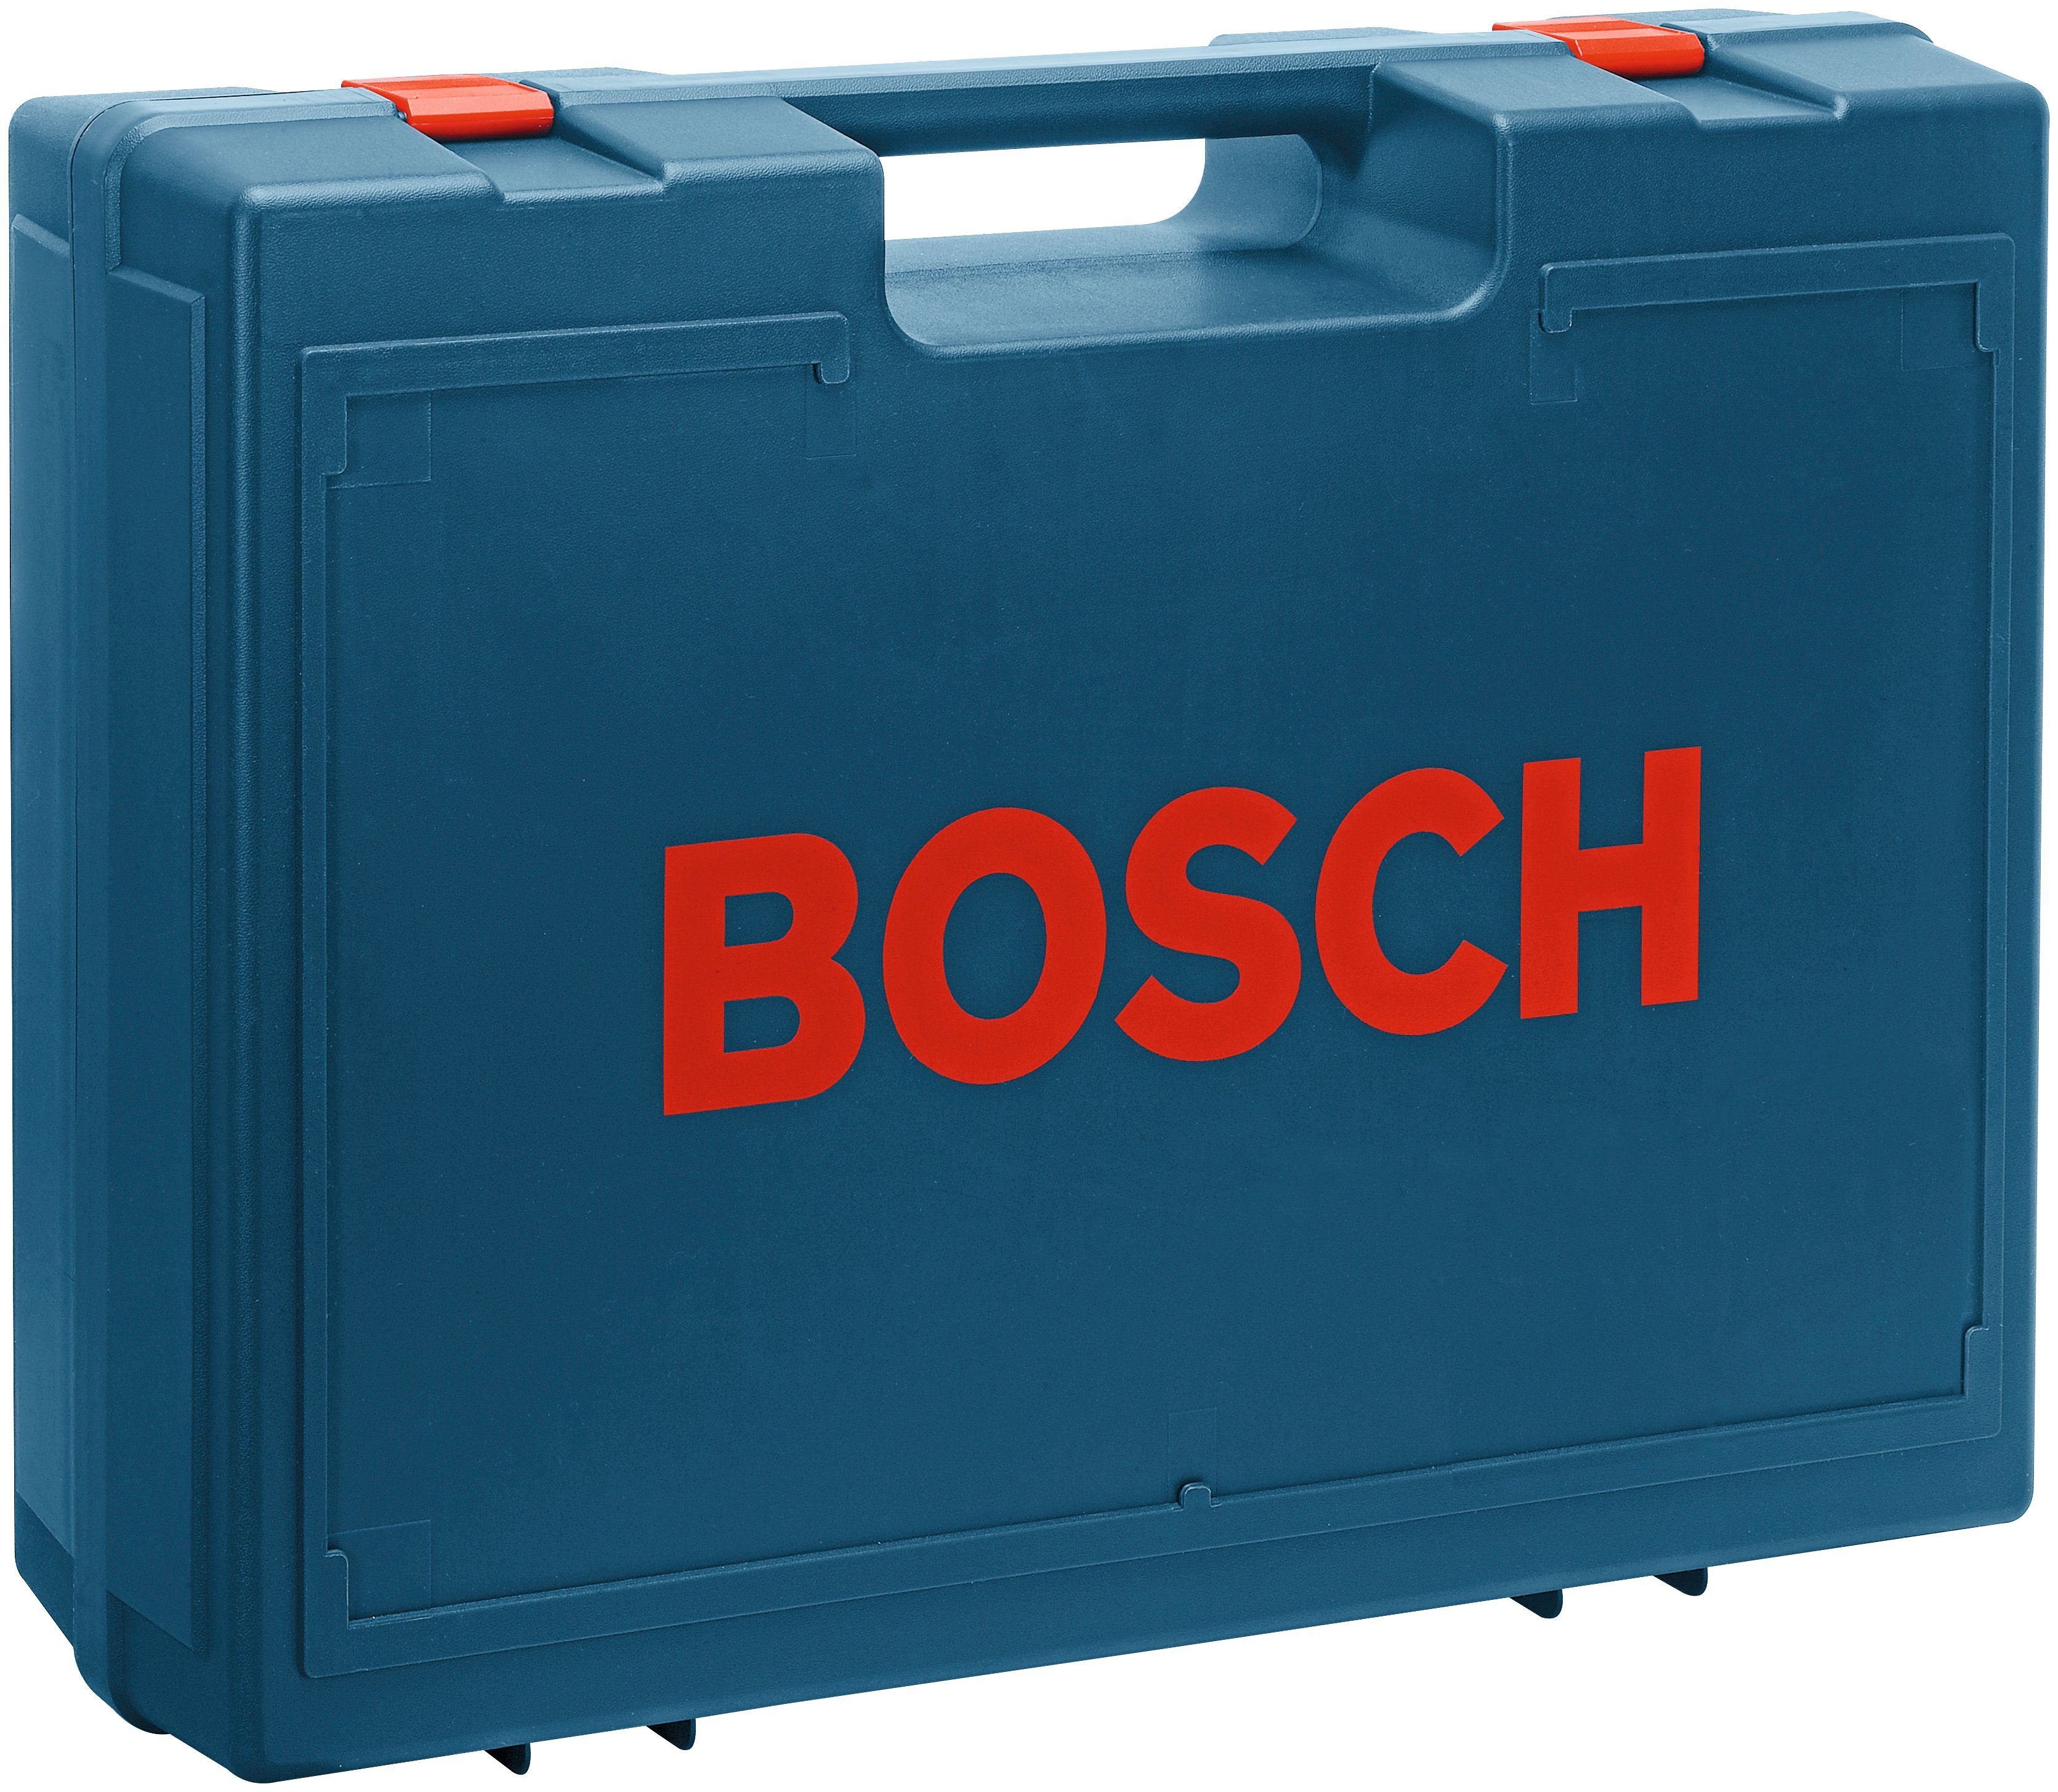 Bosch Professional Exzenterschleifer GEX AE, 24000 U/min 125-1